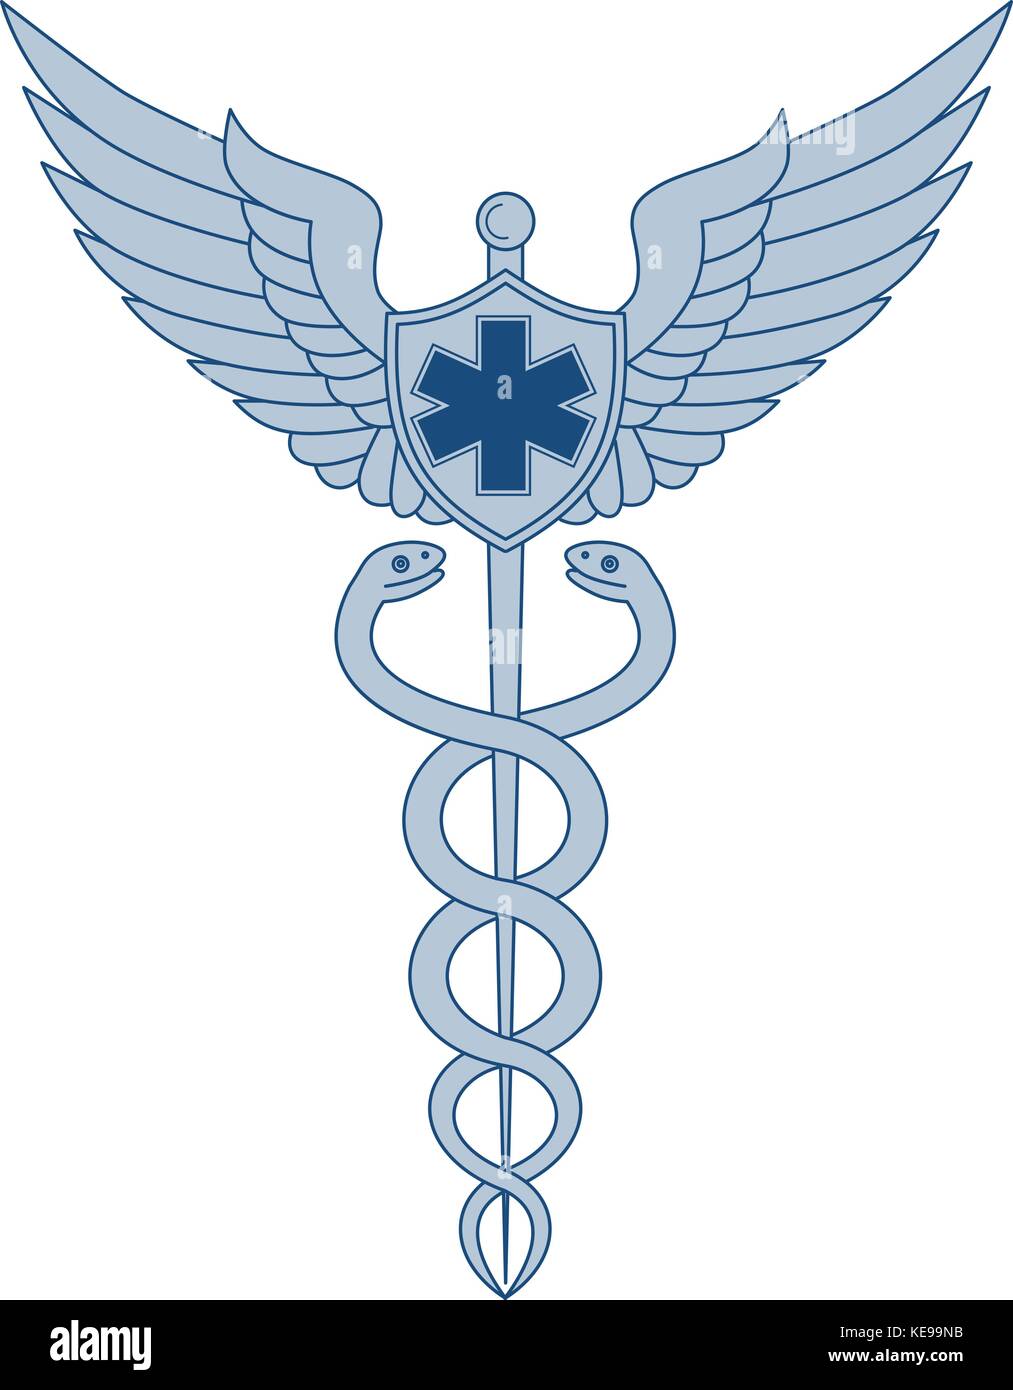 paramedic symbol tattoo